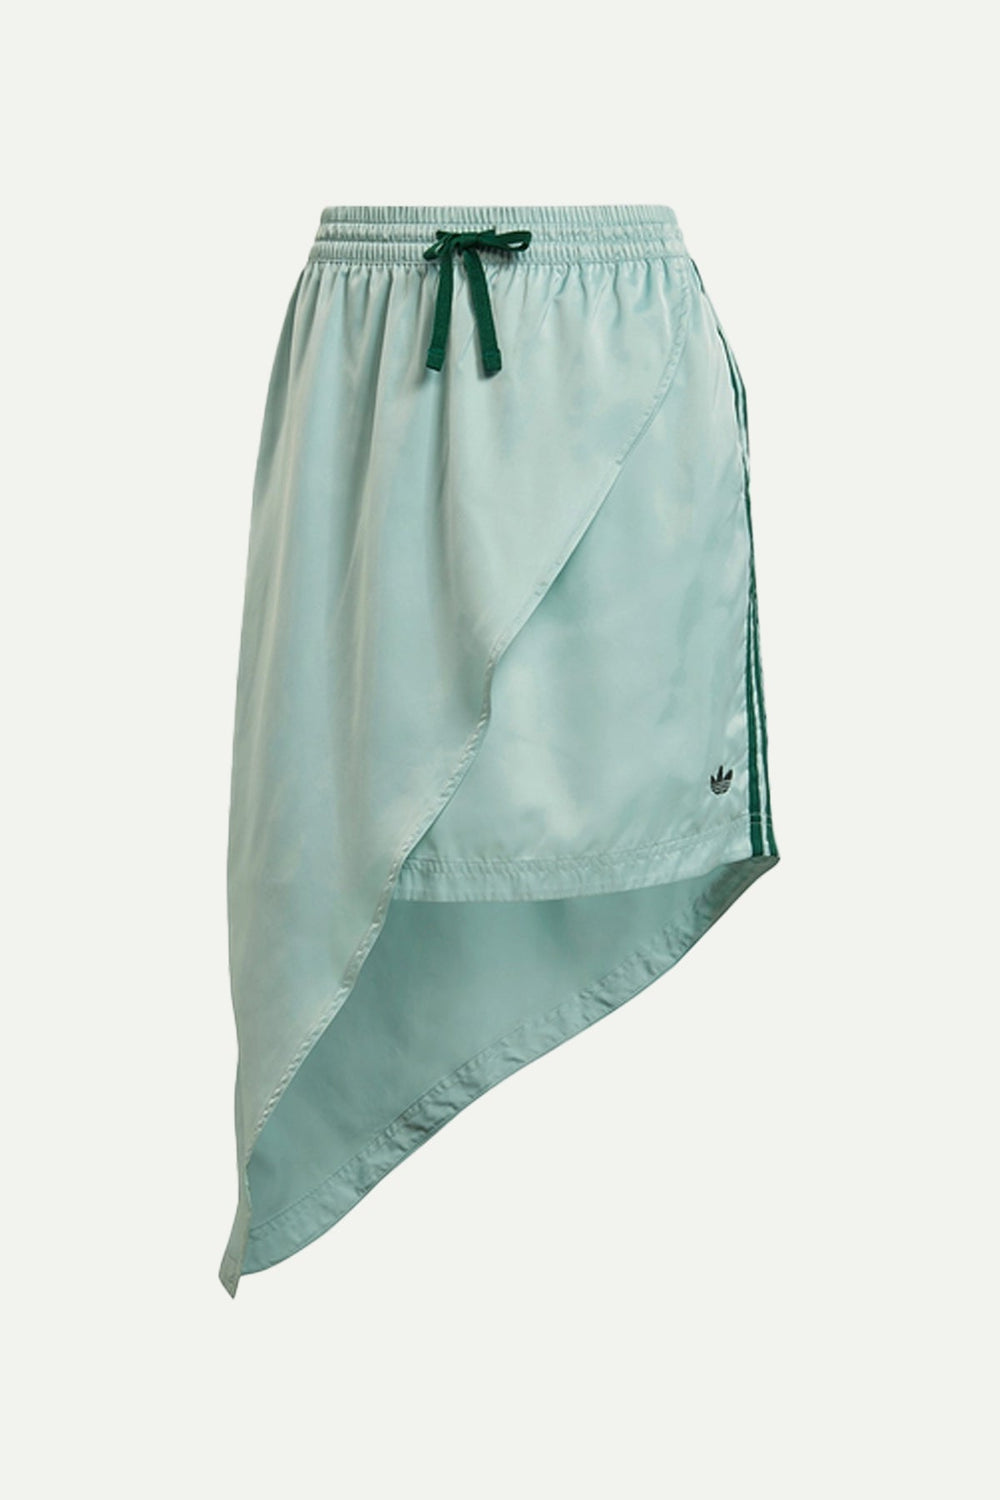 חצאית א-סימטרית Hazgrn בצבע מנטה - Adidas